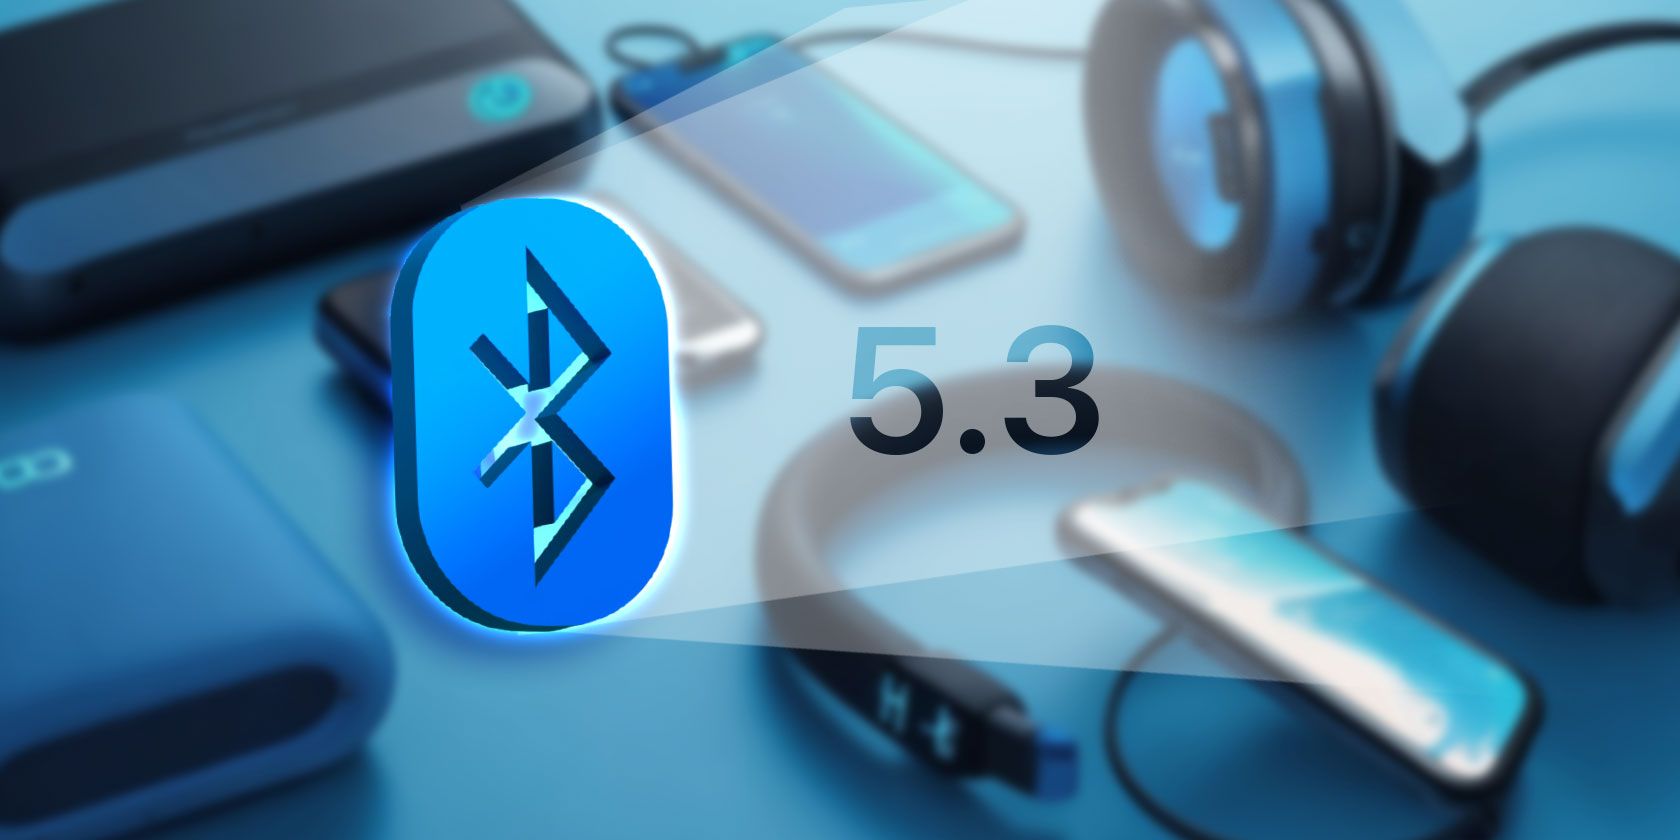 من iPhoneIslam.com، يتم عرض شعار Bluetooth 5.3 بشكل بارز مع أجهزة مختلفة مثل الهواتف الذكية والساعة الذكية وسماعات AirPods في الخلفية.